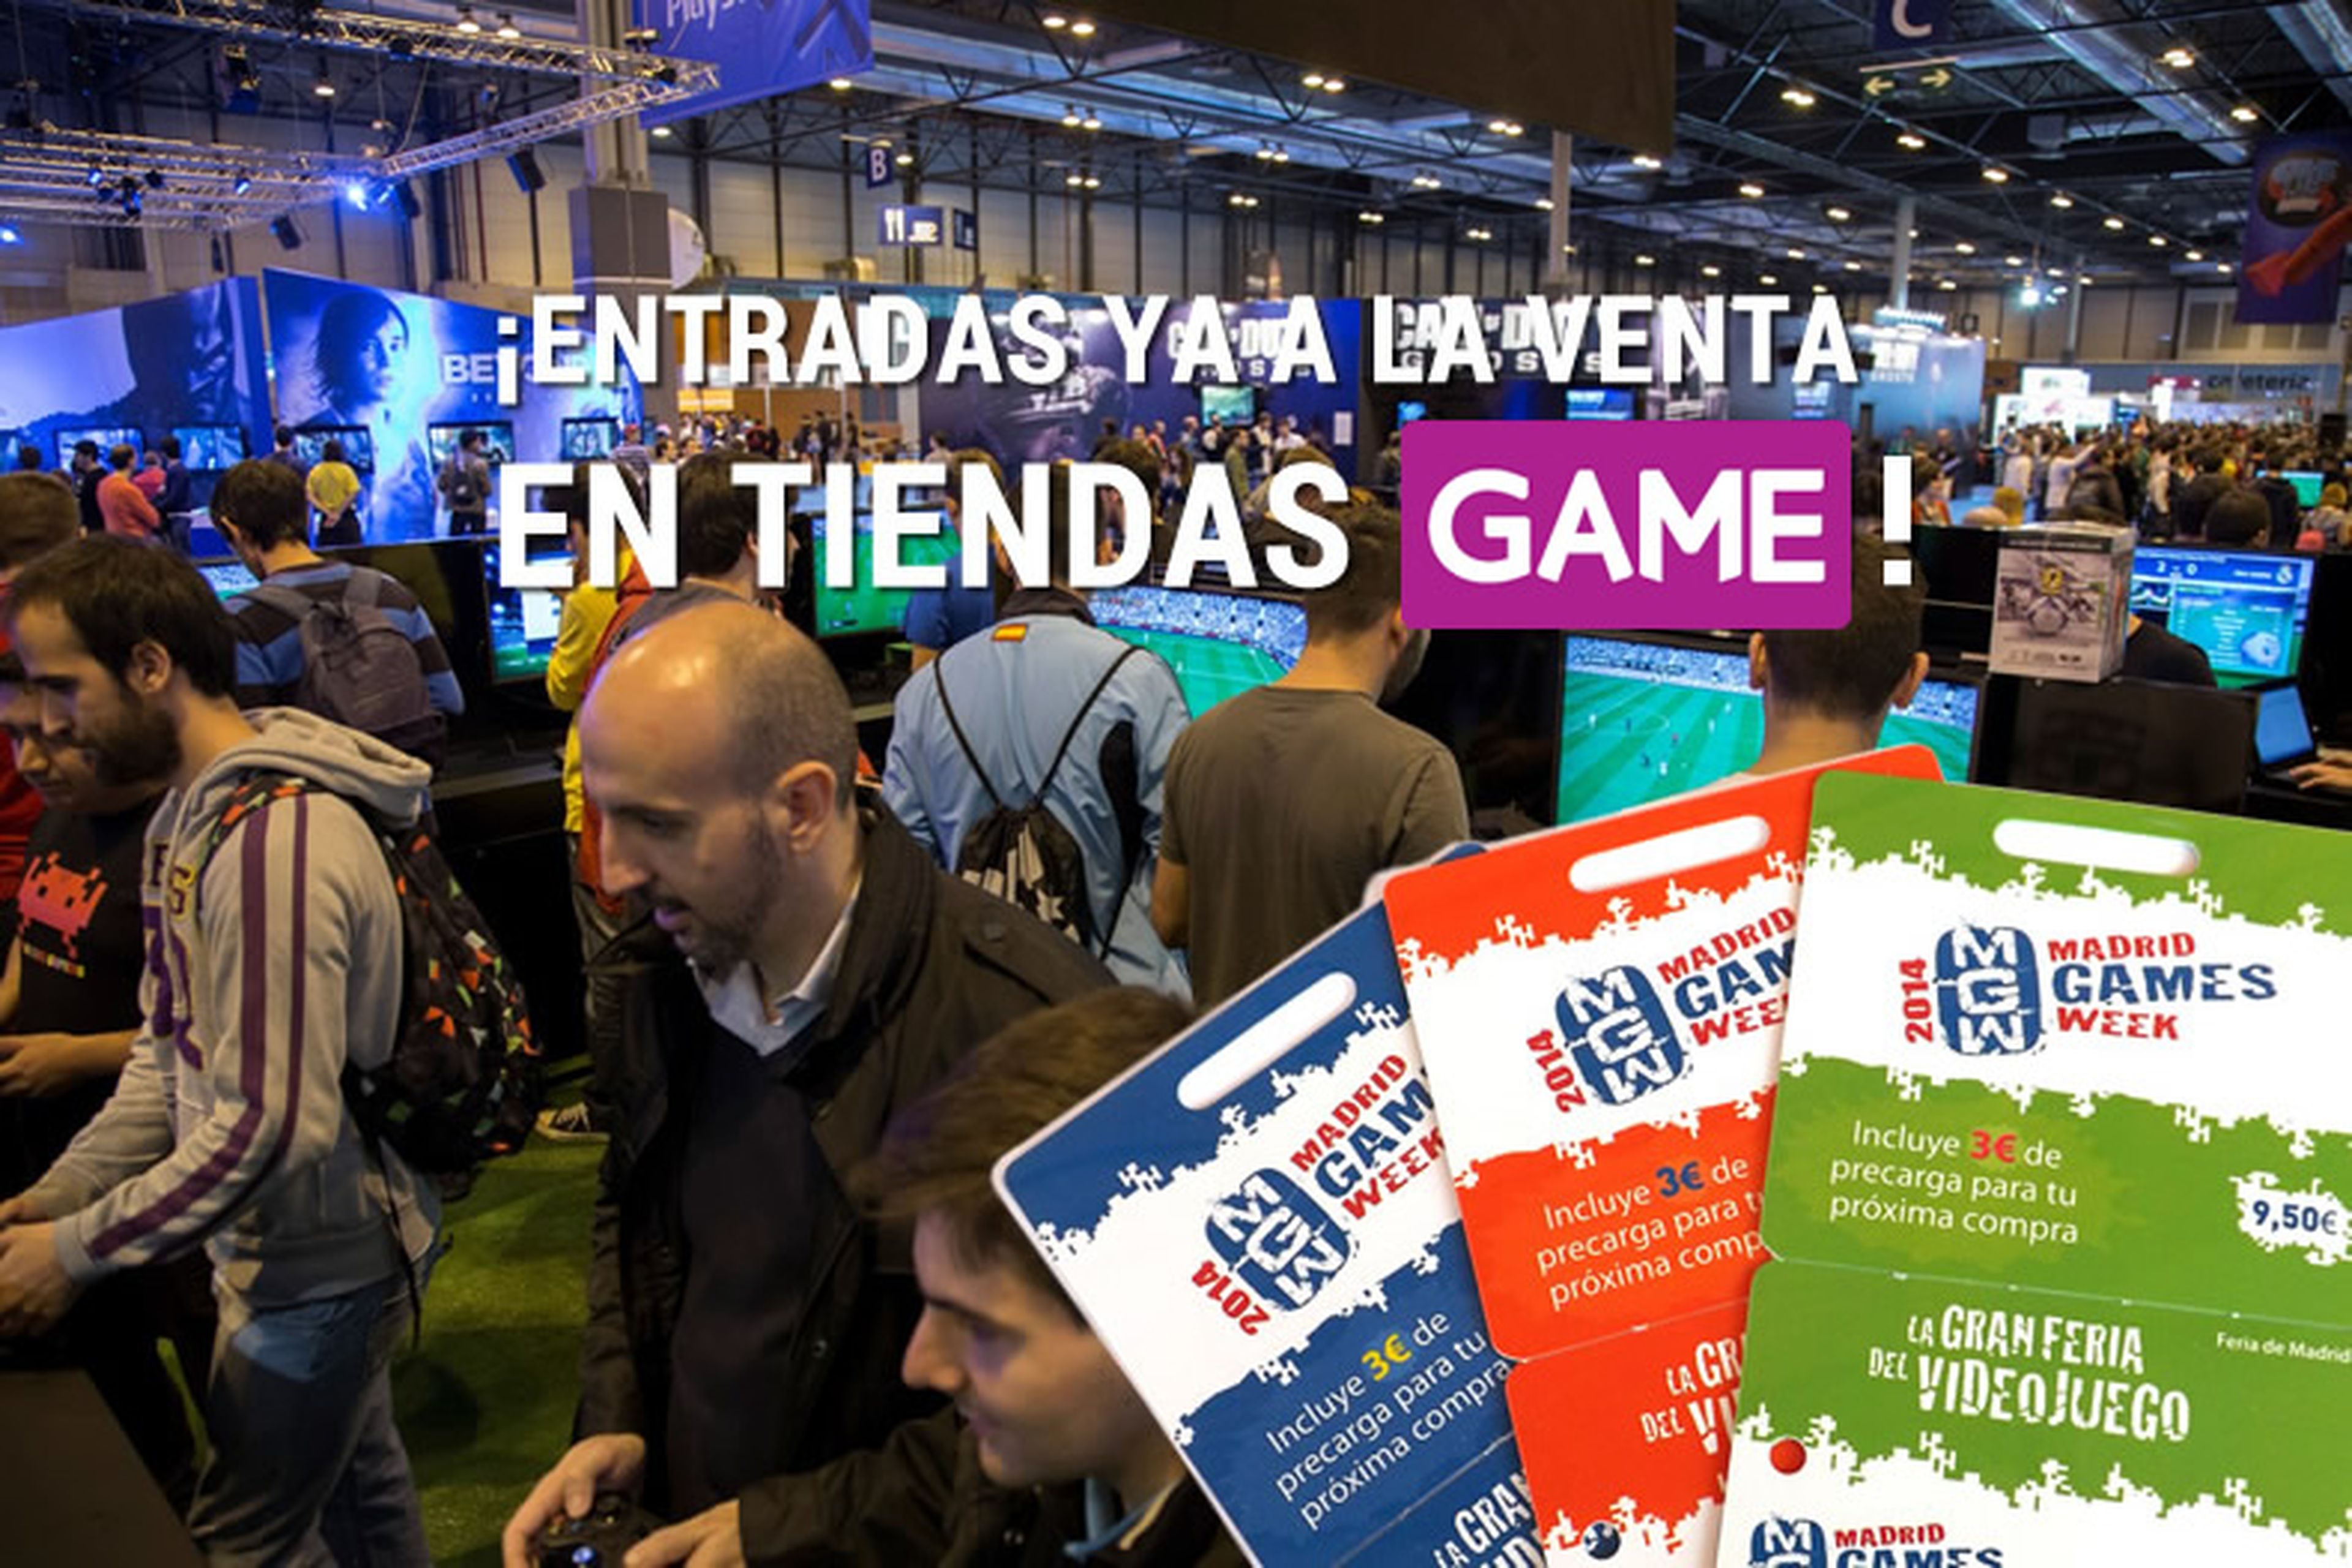 Game pone a la venta las entradas para Madrid Games Week 2014